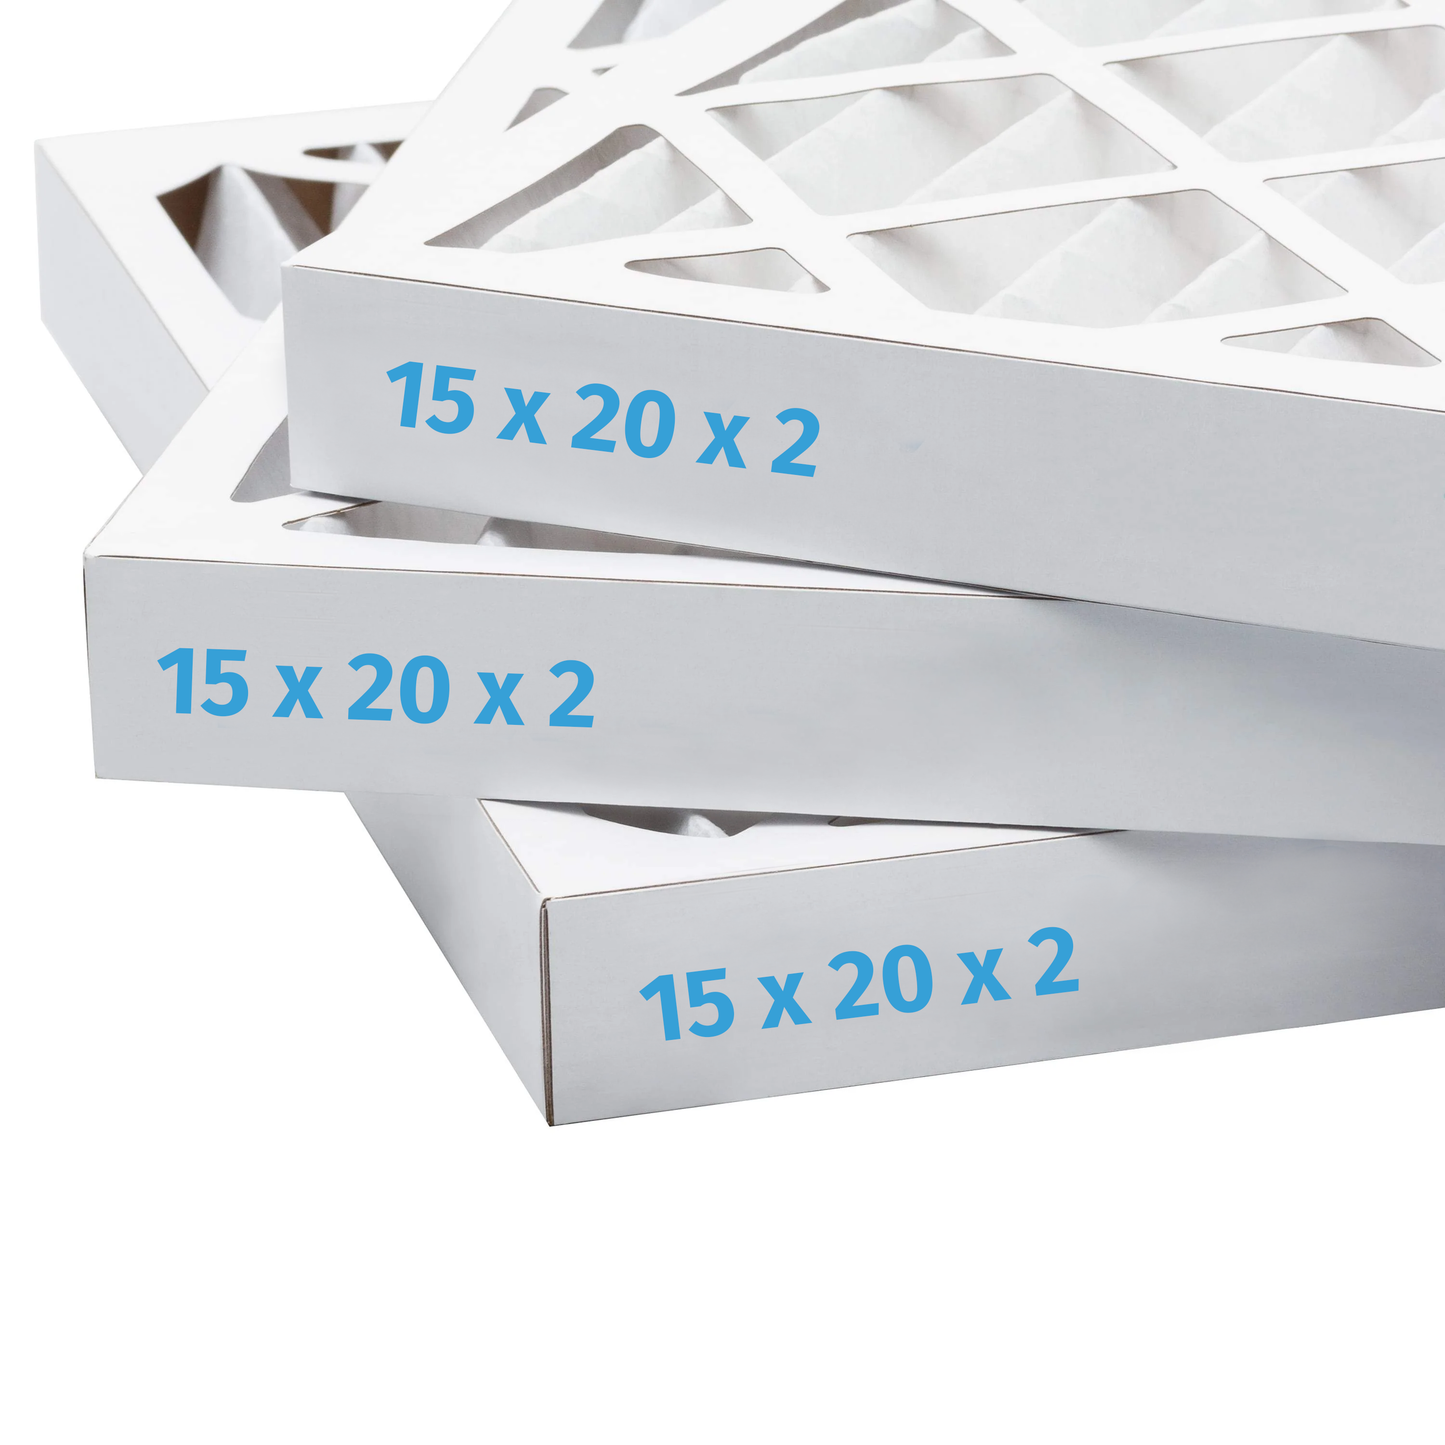 15x20x2 Air Filter - AC Furnace Filter